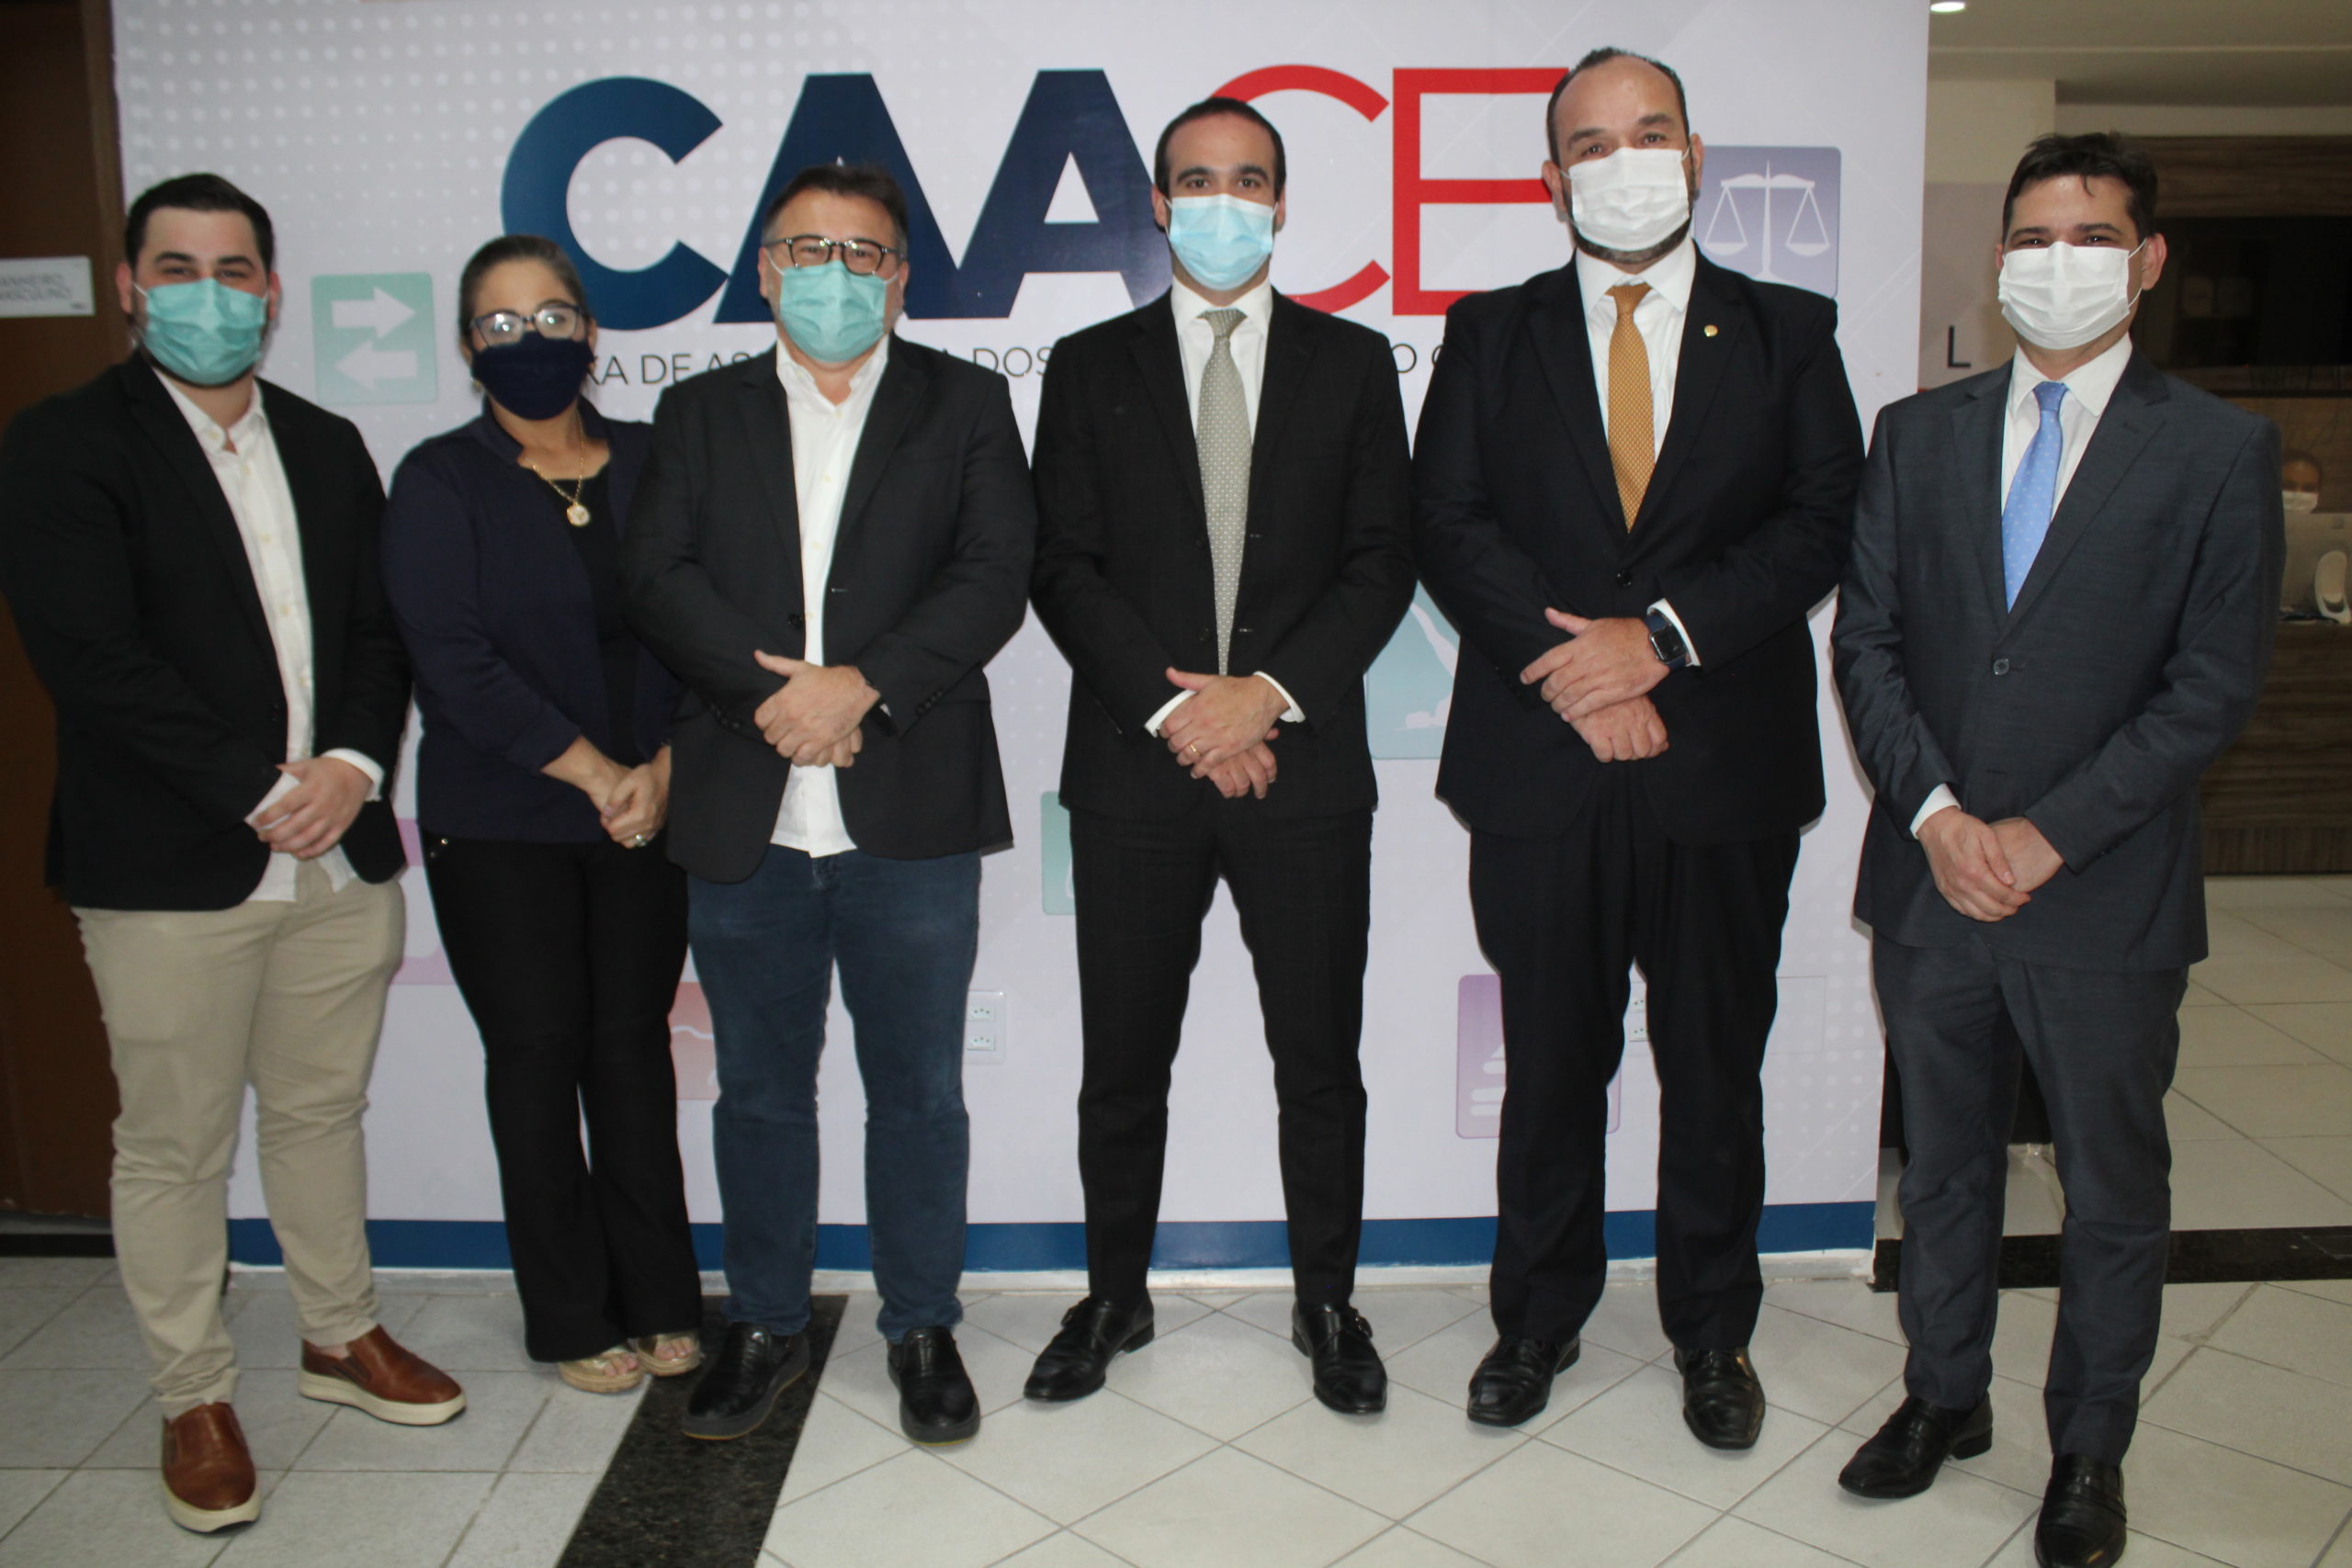 Robinson de Castro, presidente do Ceará, visita sede da CAACE e se reúne com diretores